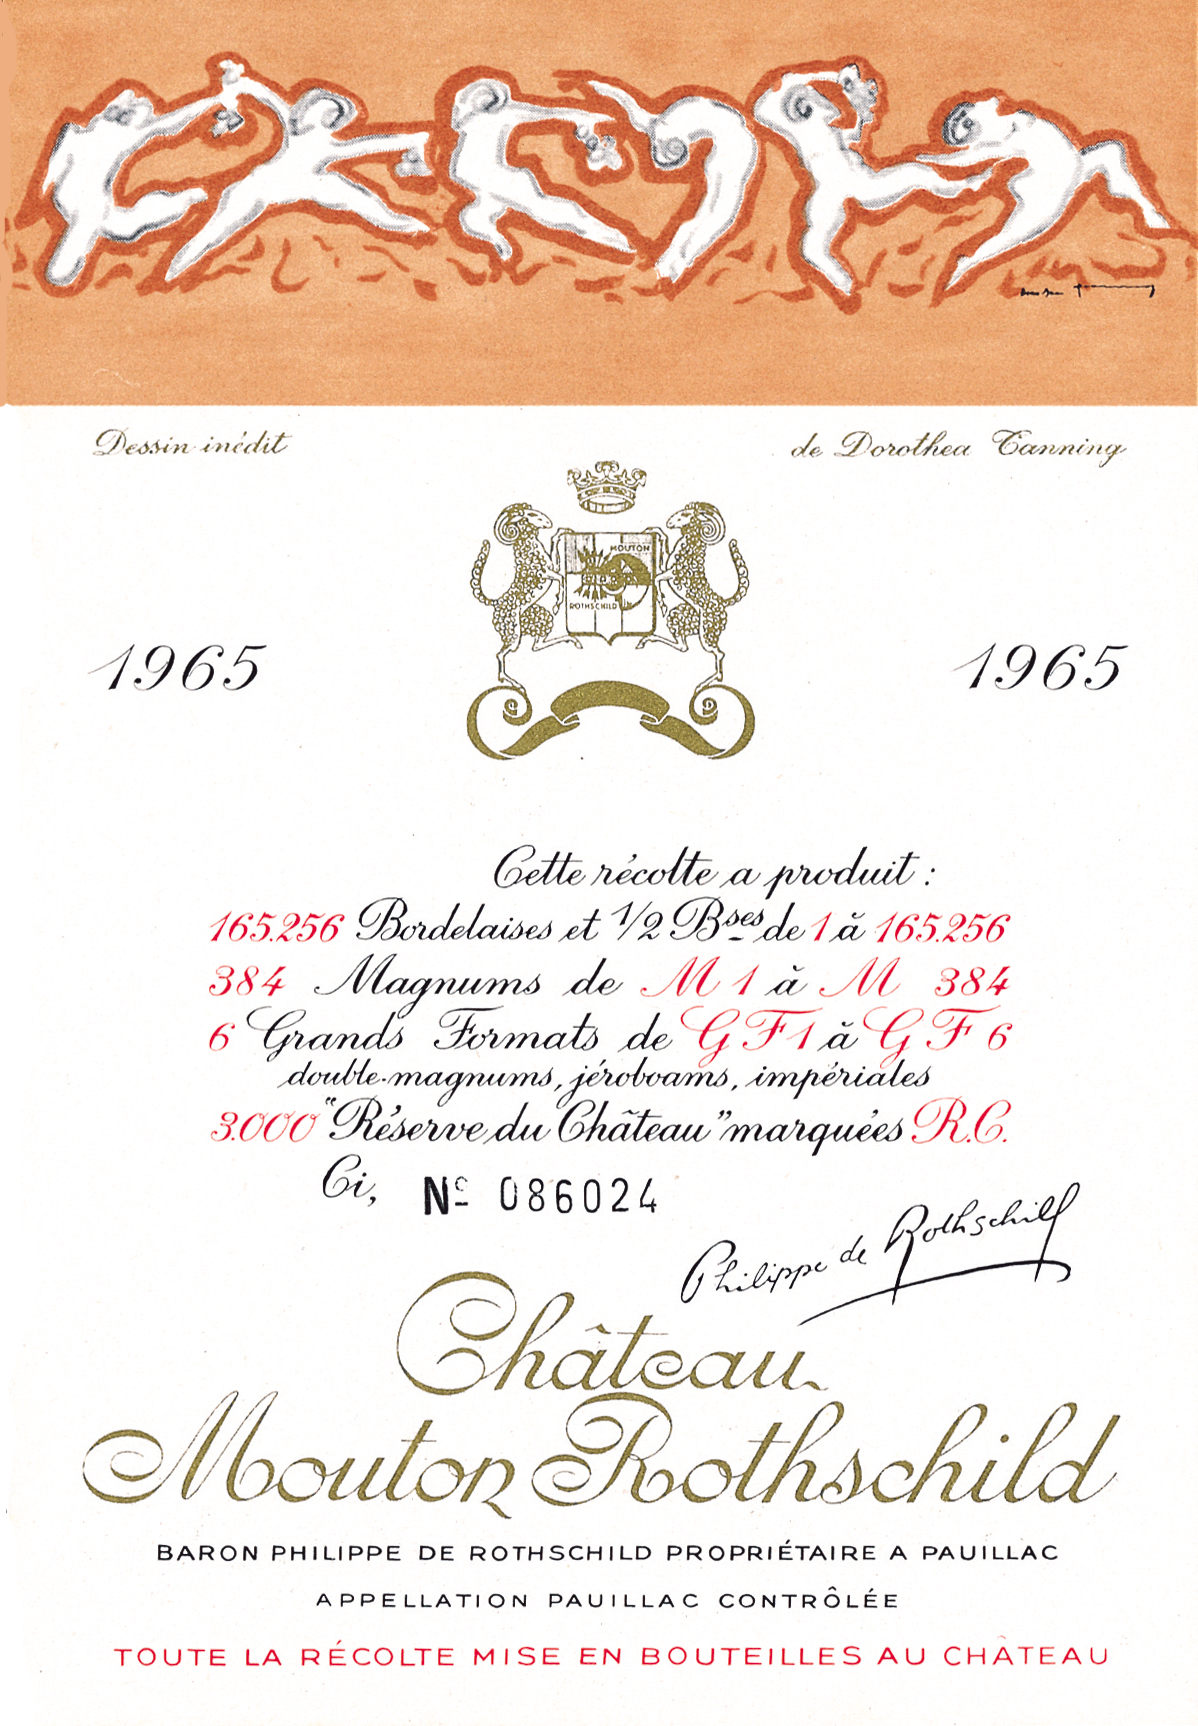 Etiquette Mouton Rothschild 1965